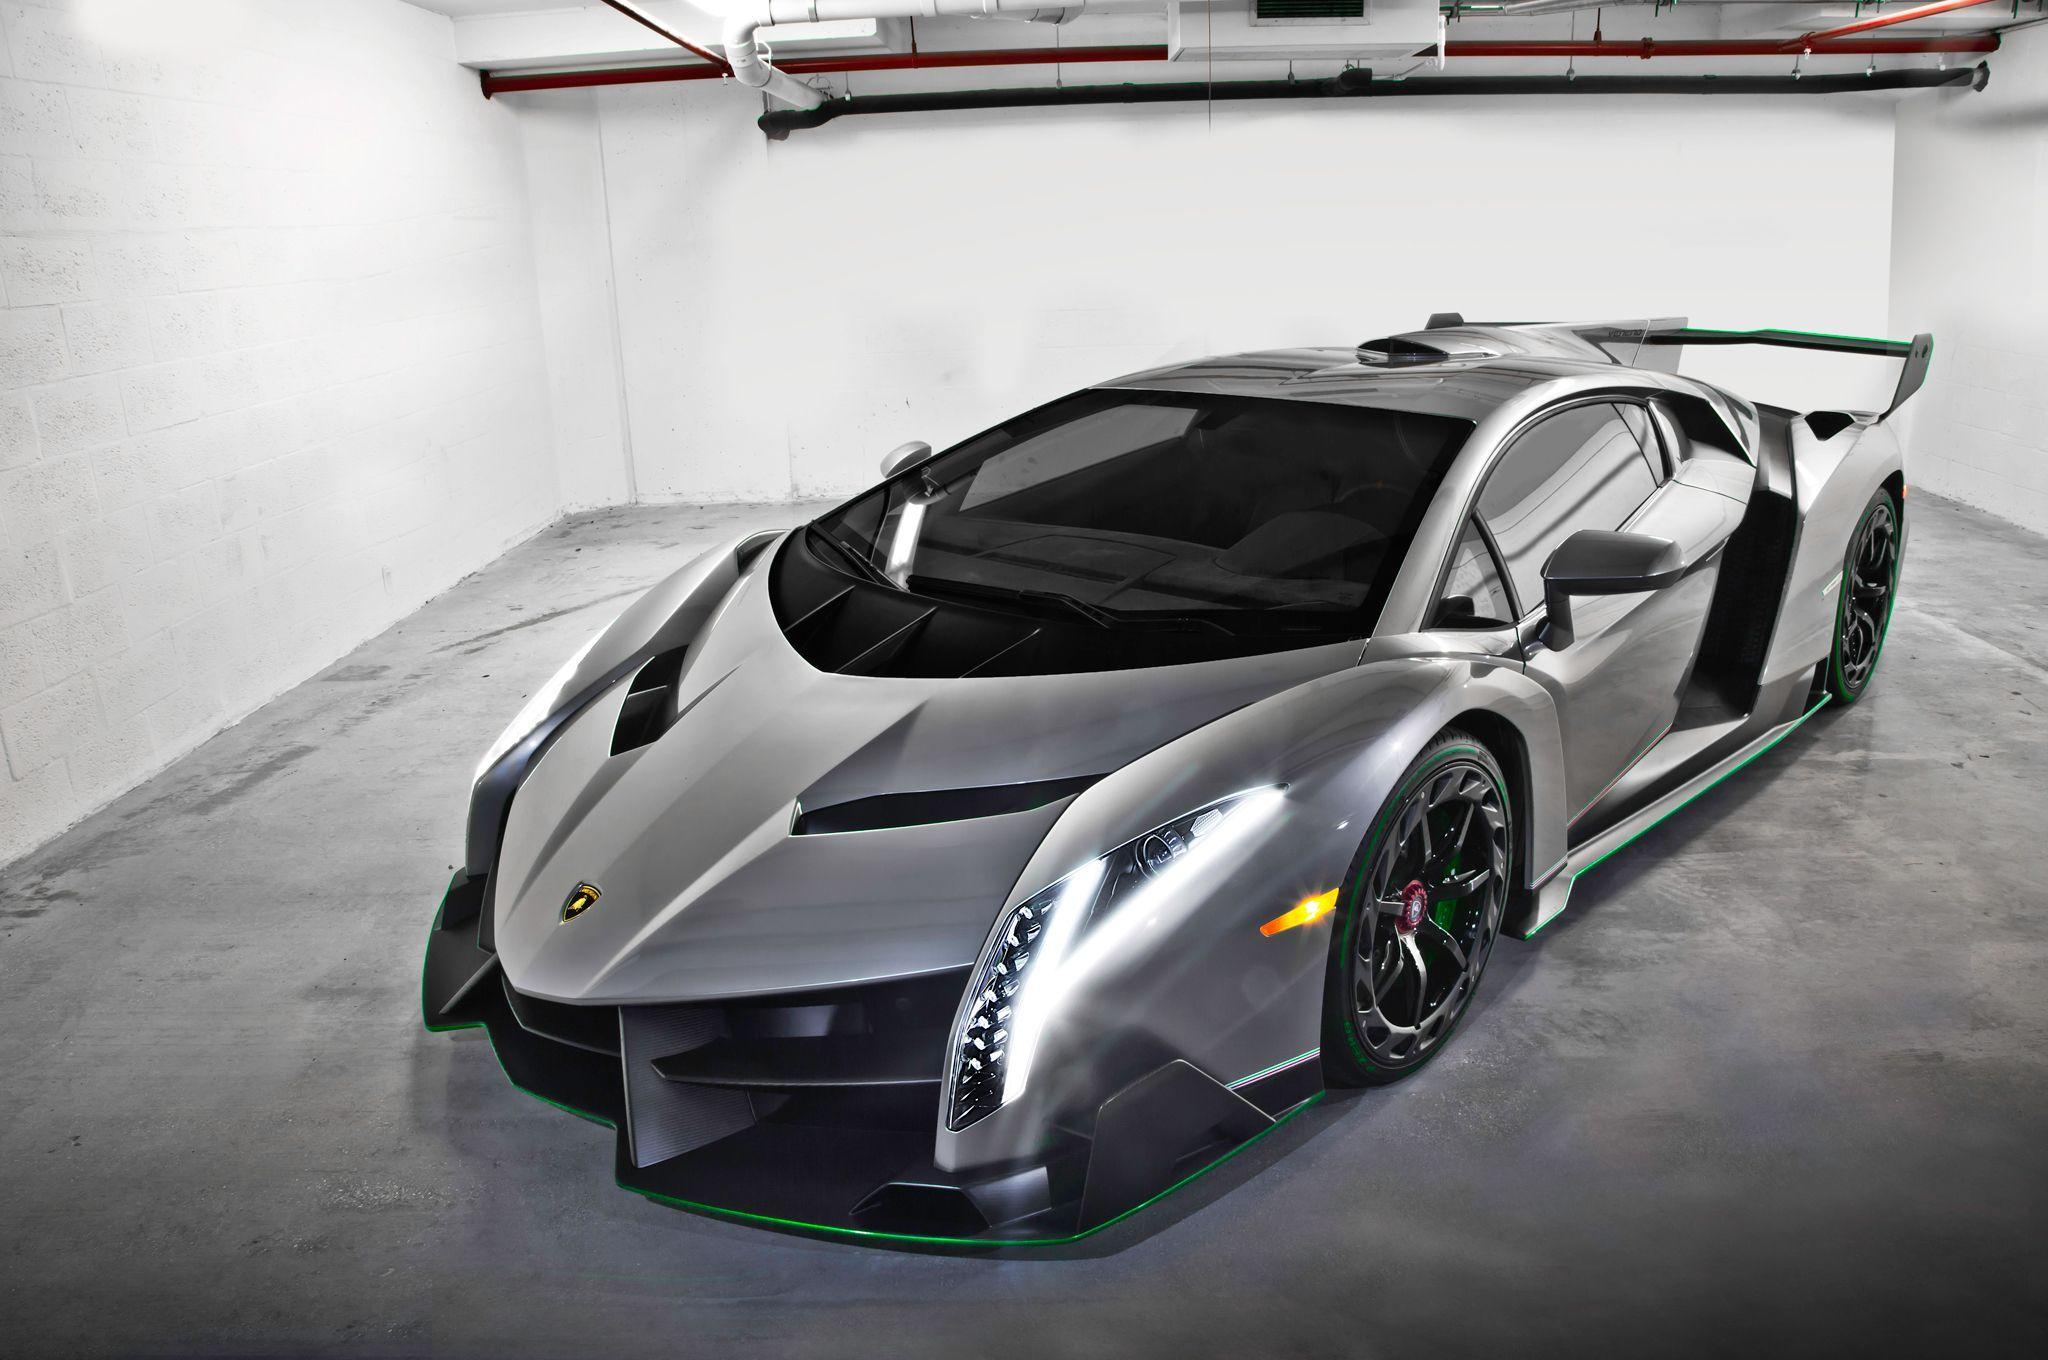 Lamborghini Veneno Wallpaper Image Photo Picture Background